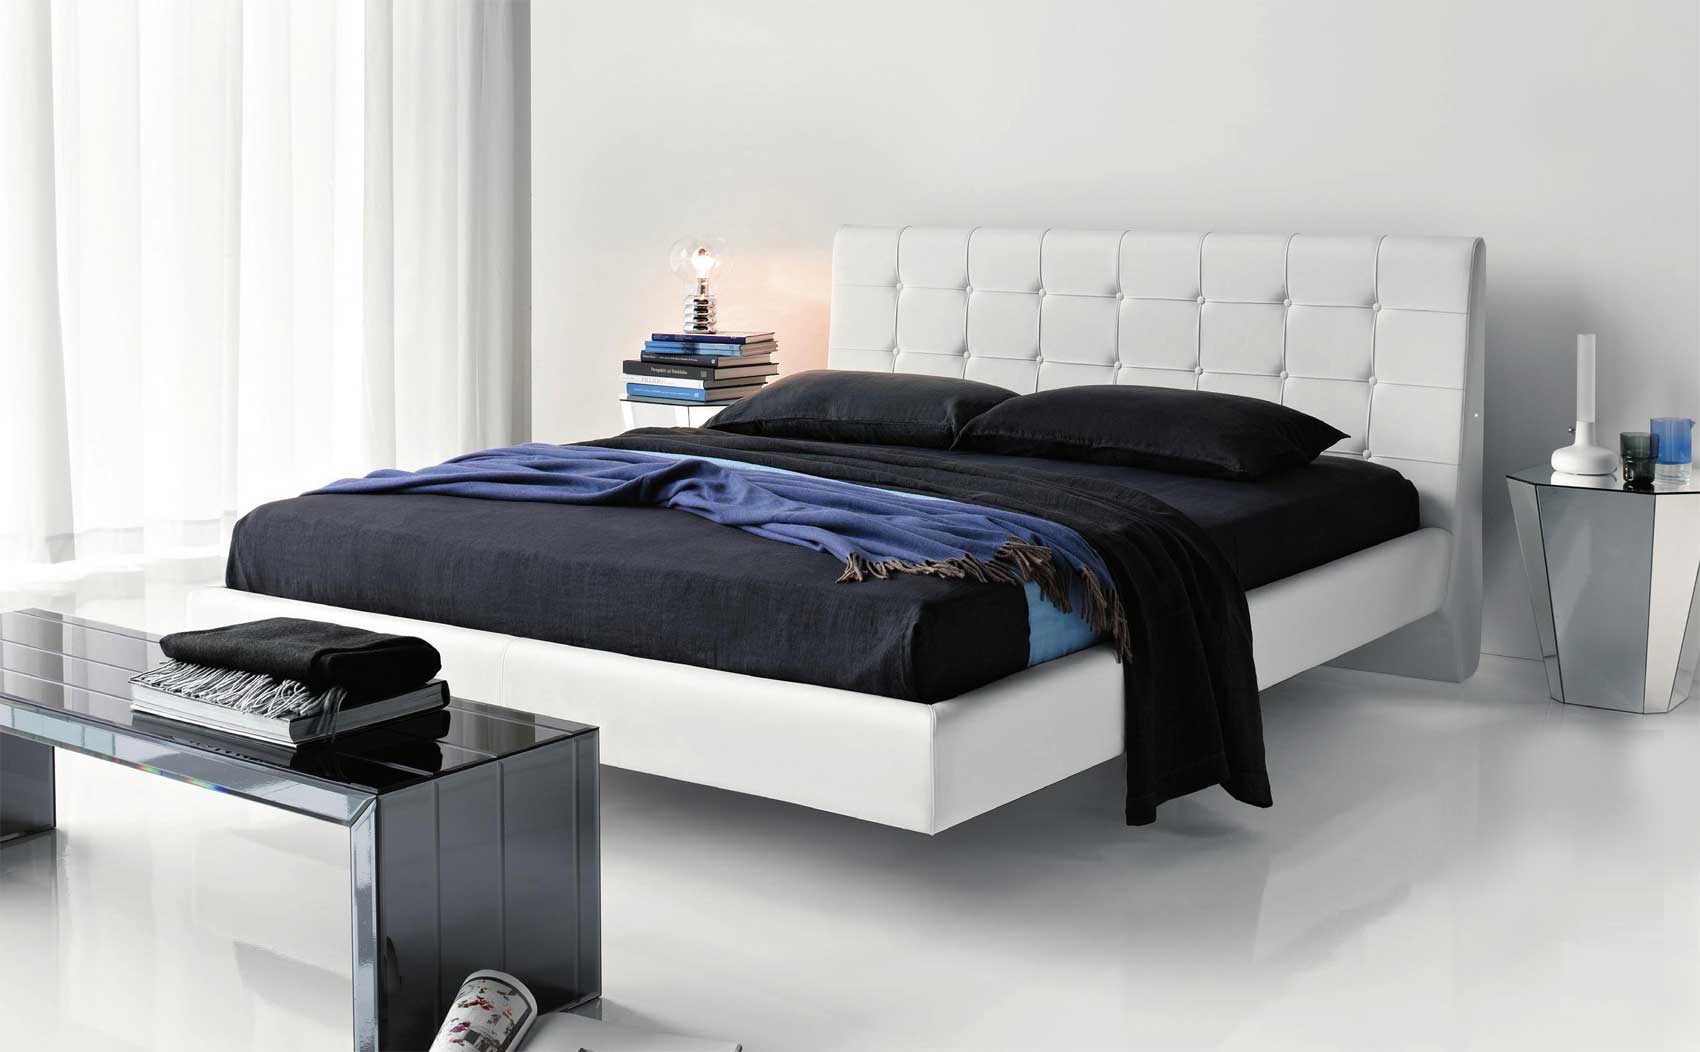 В спальне стиля модерн можно сочетать серые, черные, белые и даже синие оттенки